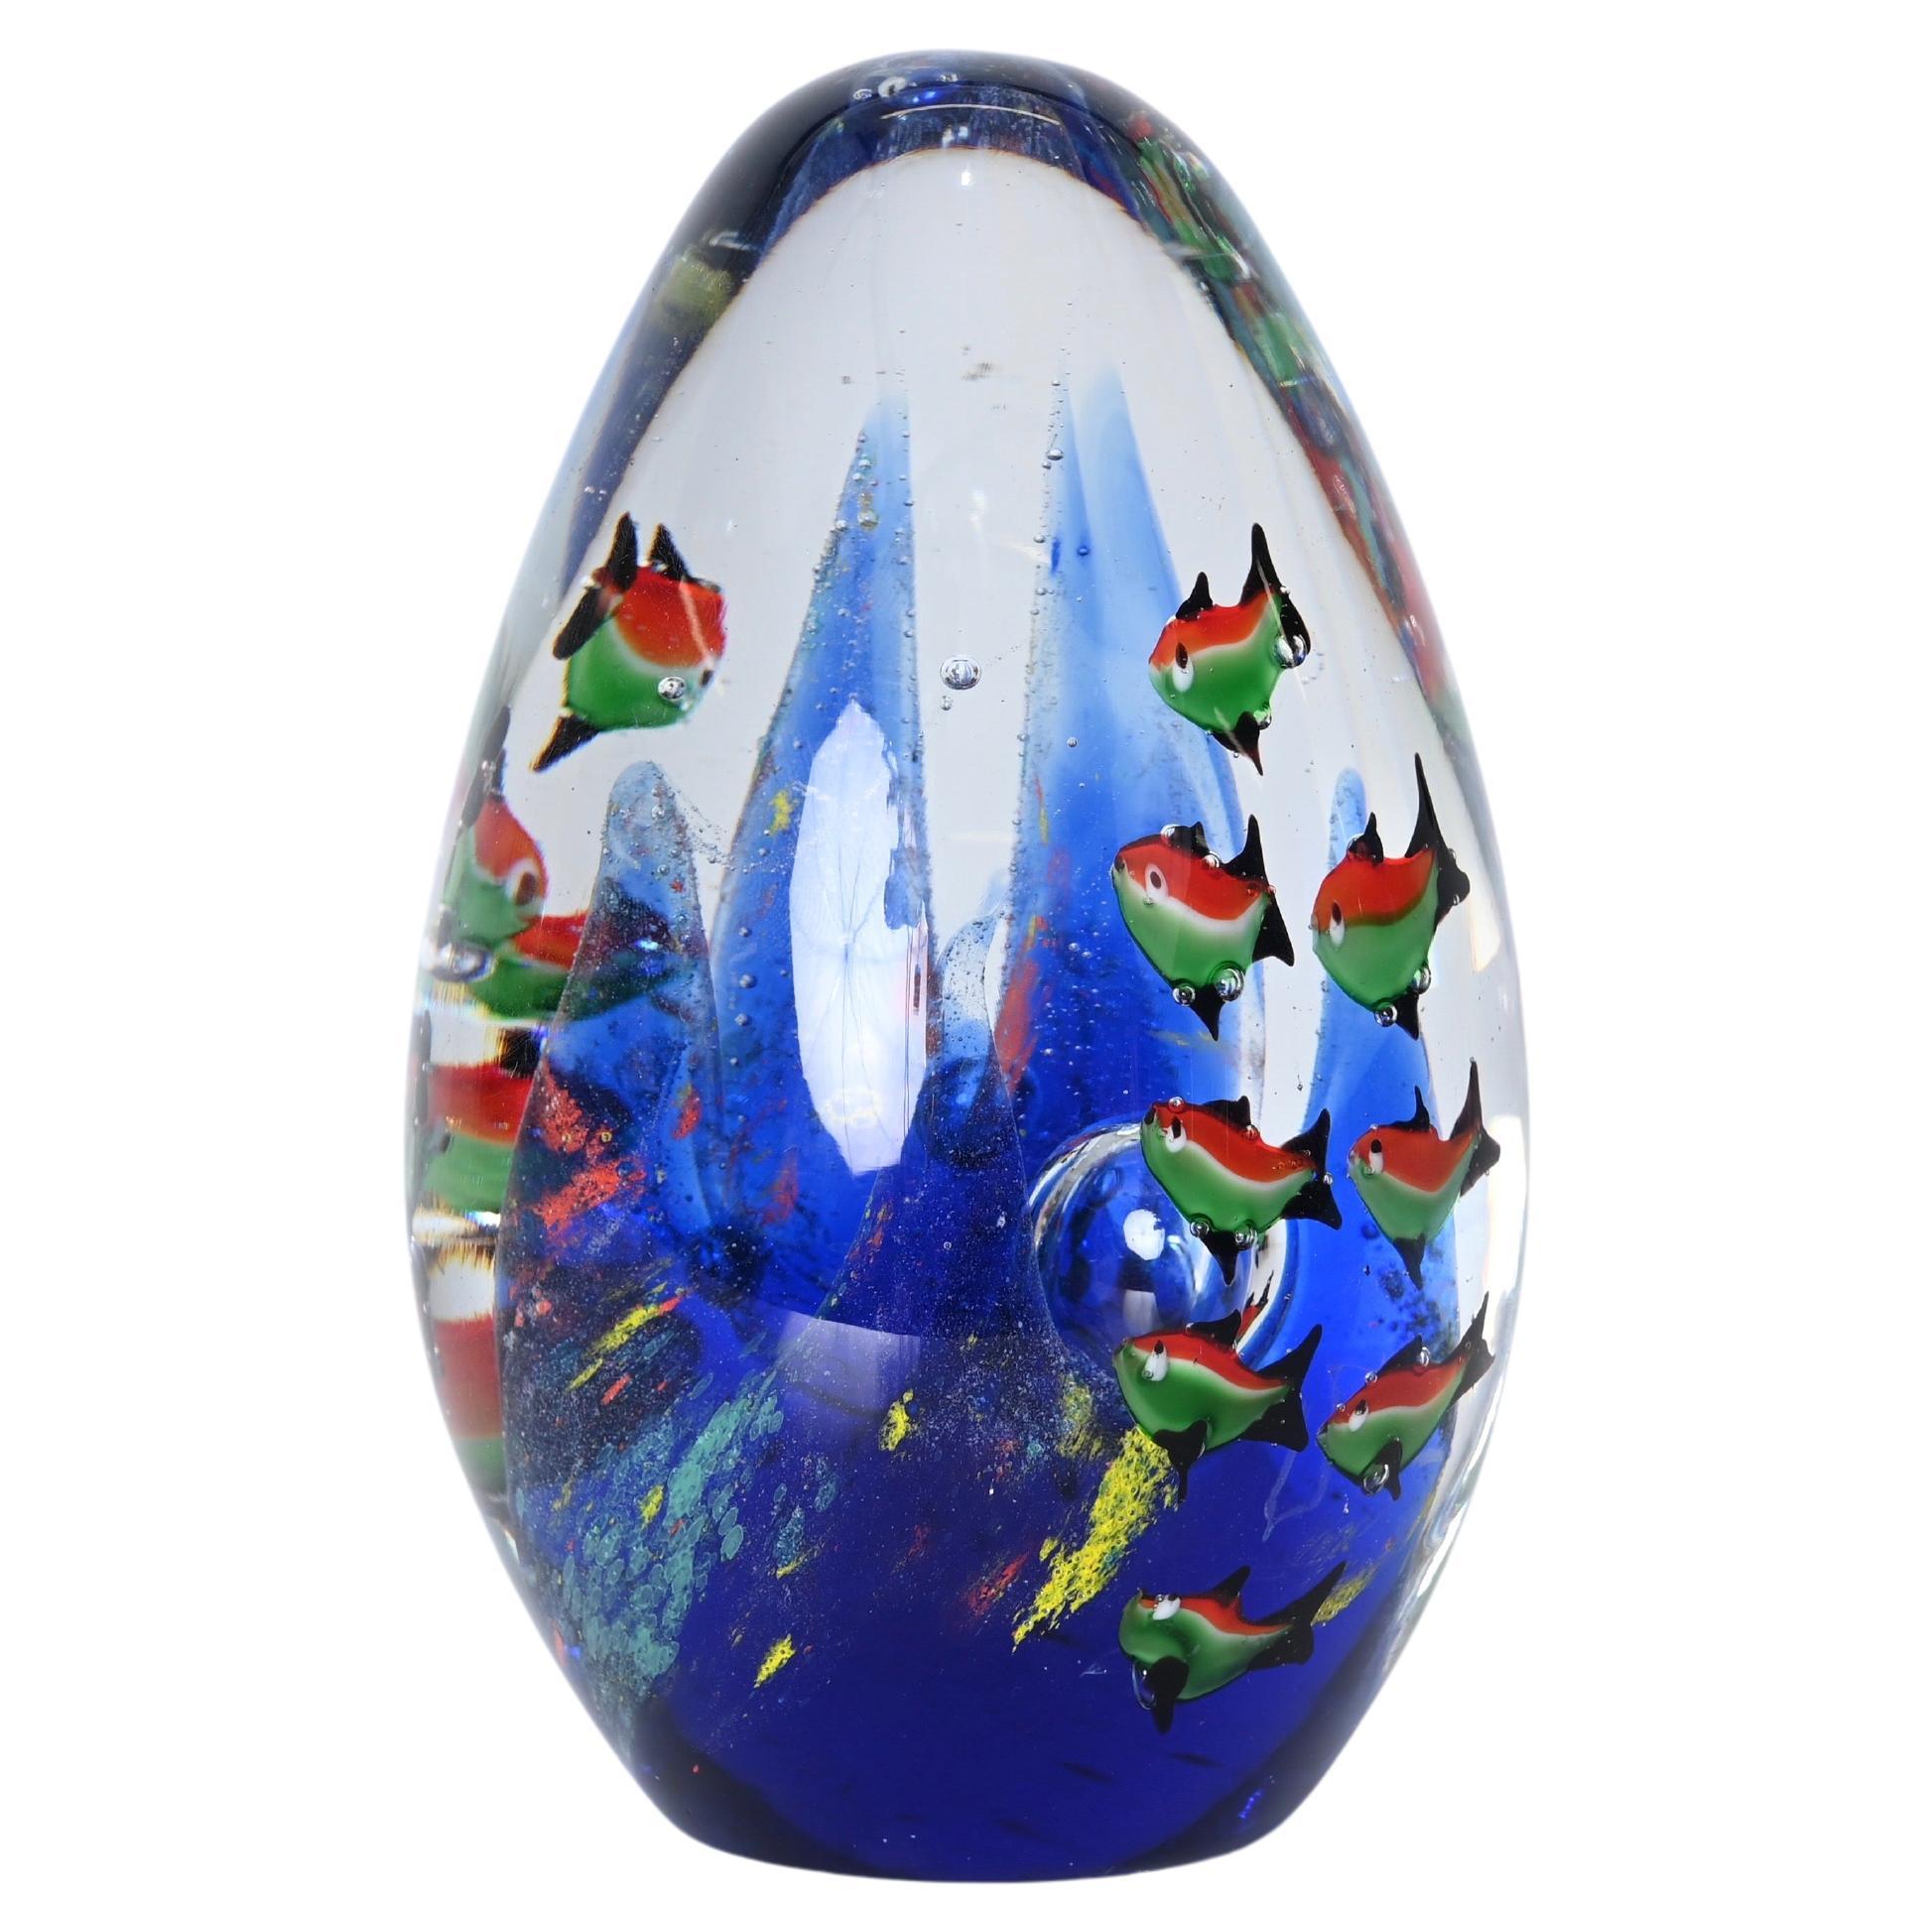 Cenedese Artistic Handmade Egg "Aquarium" Murano Glass Sculpture, Italy 1960s